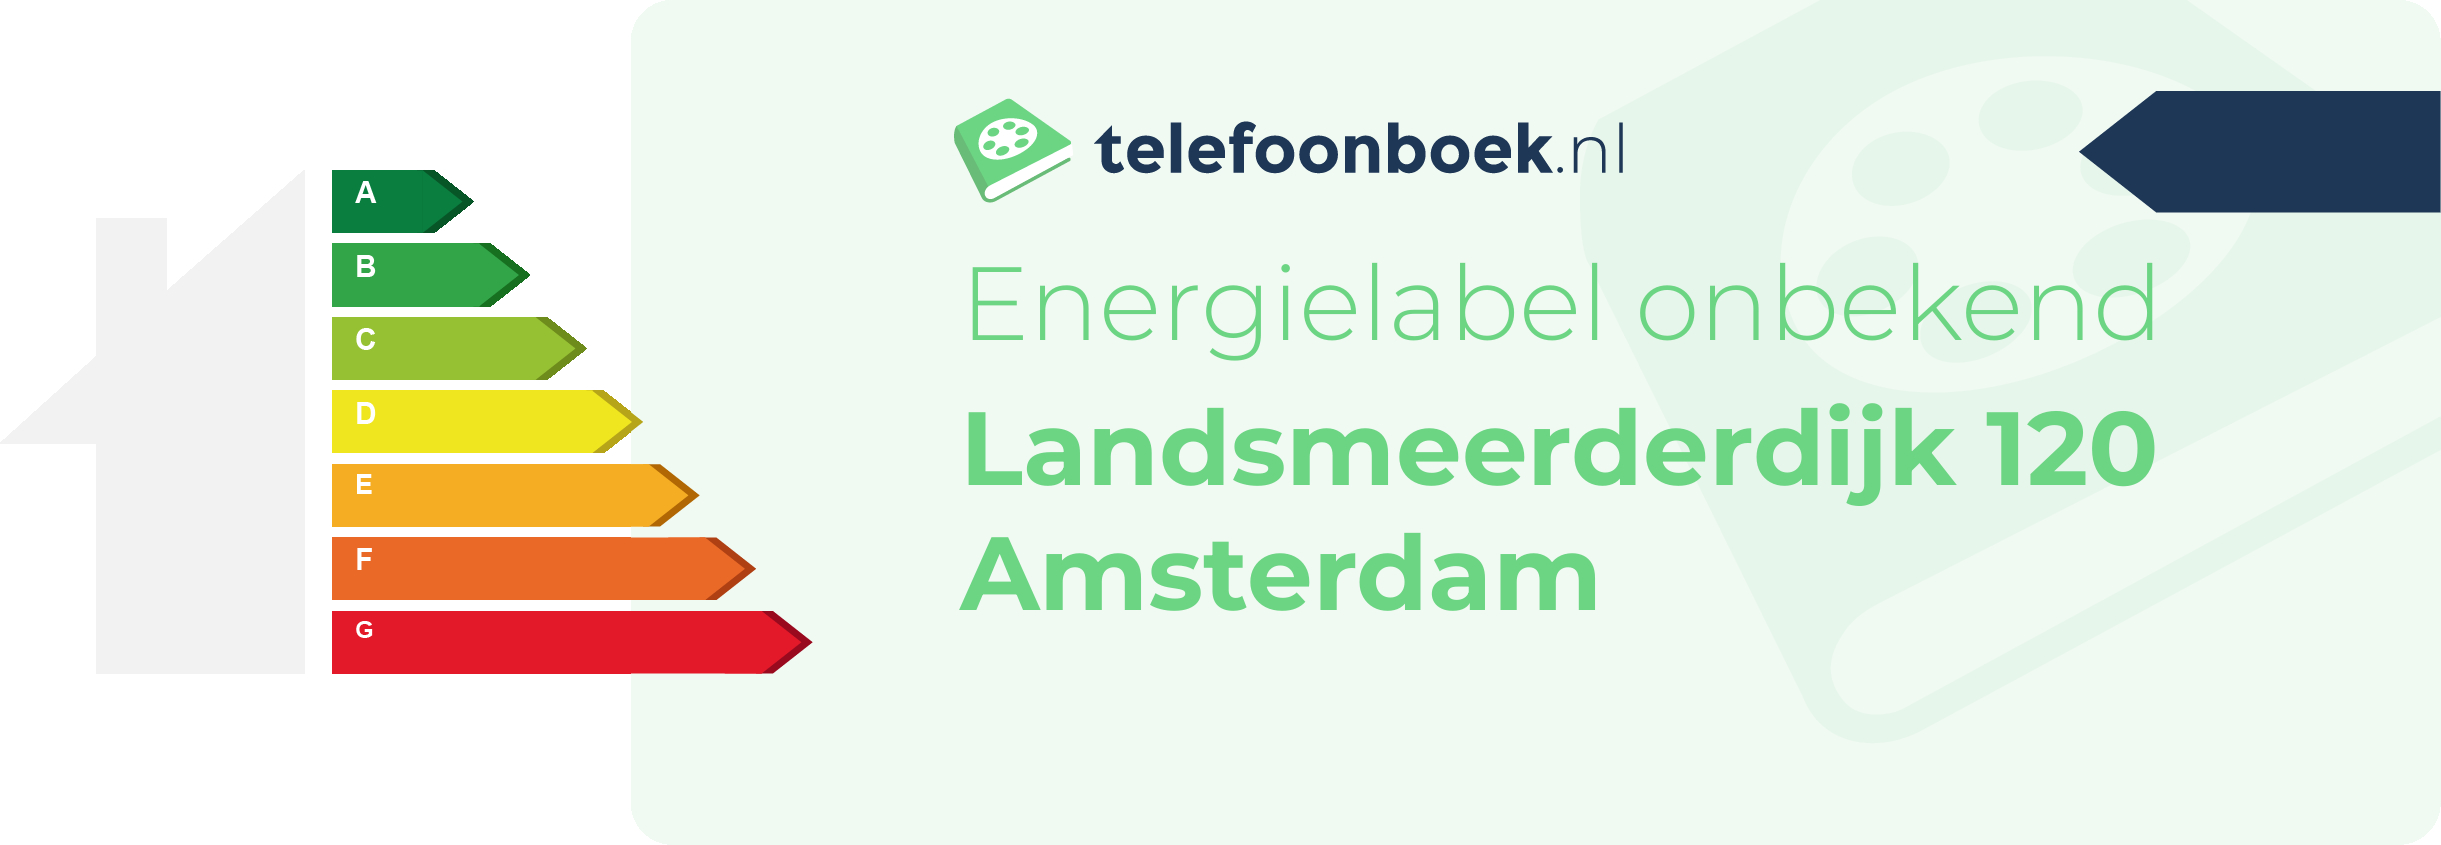 Energielabel Landsmeerderdijk 120 Amsterdam